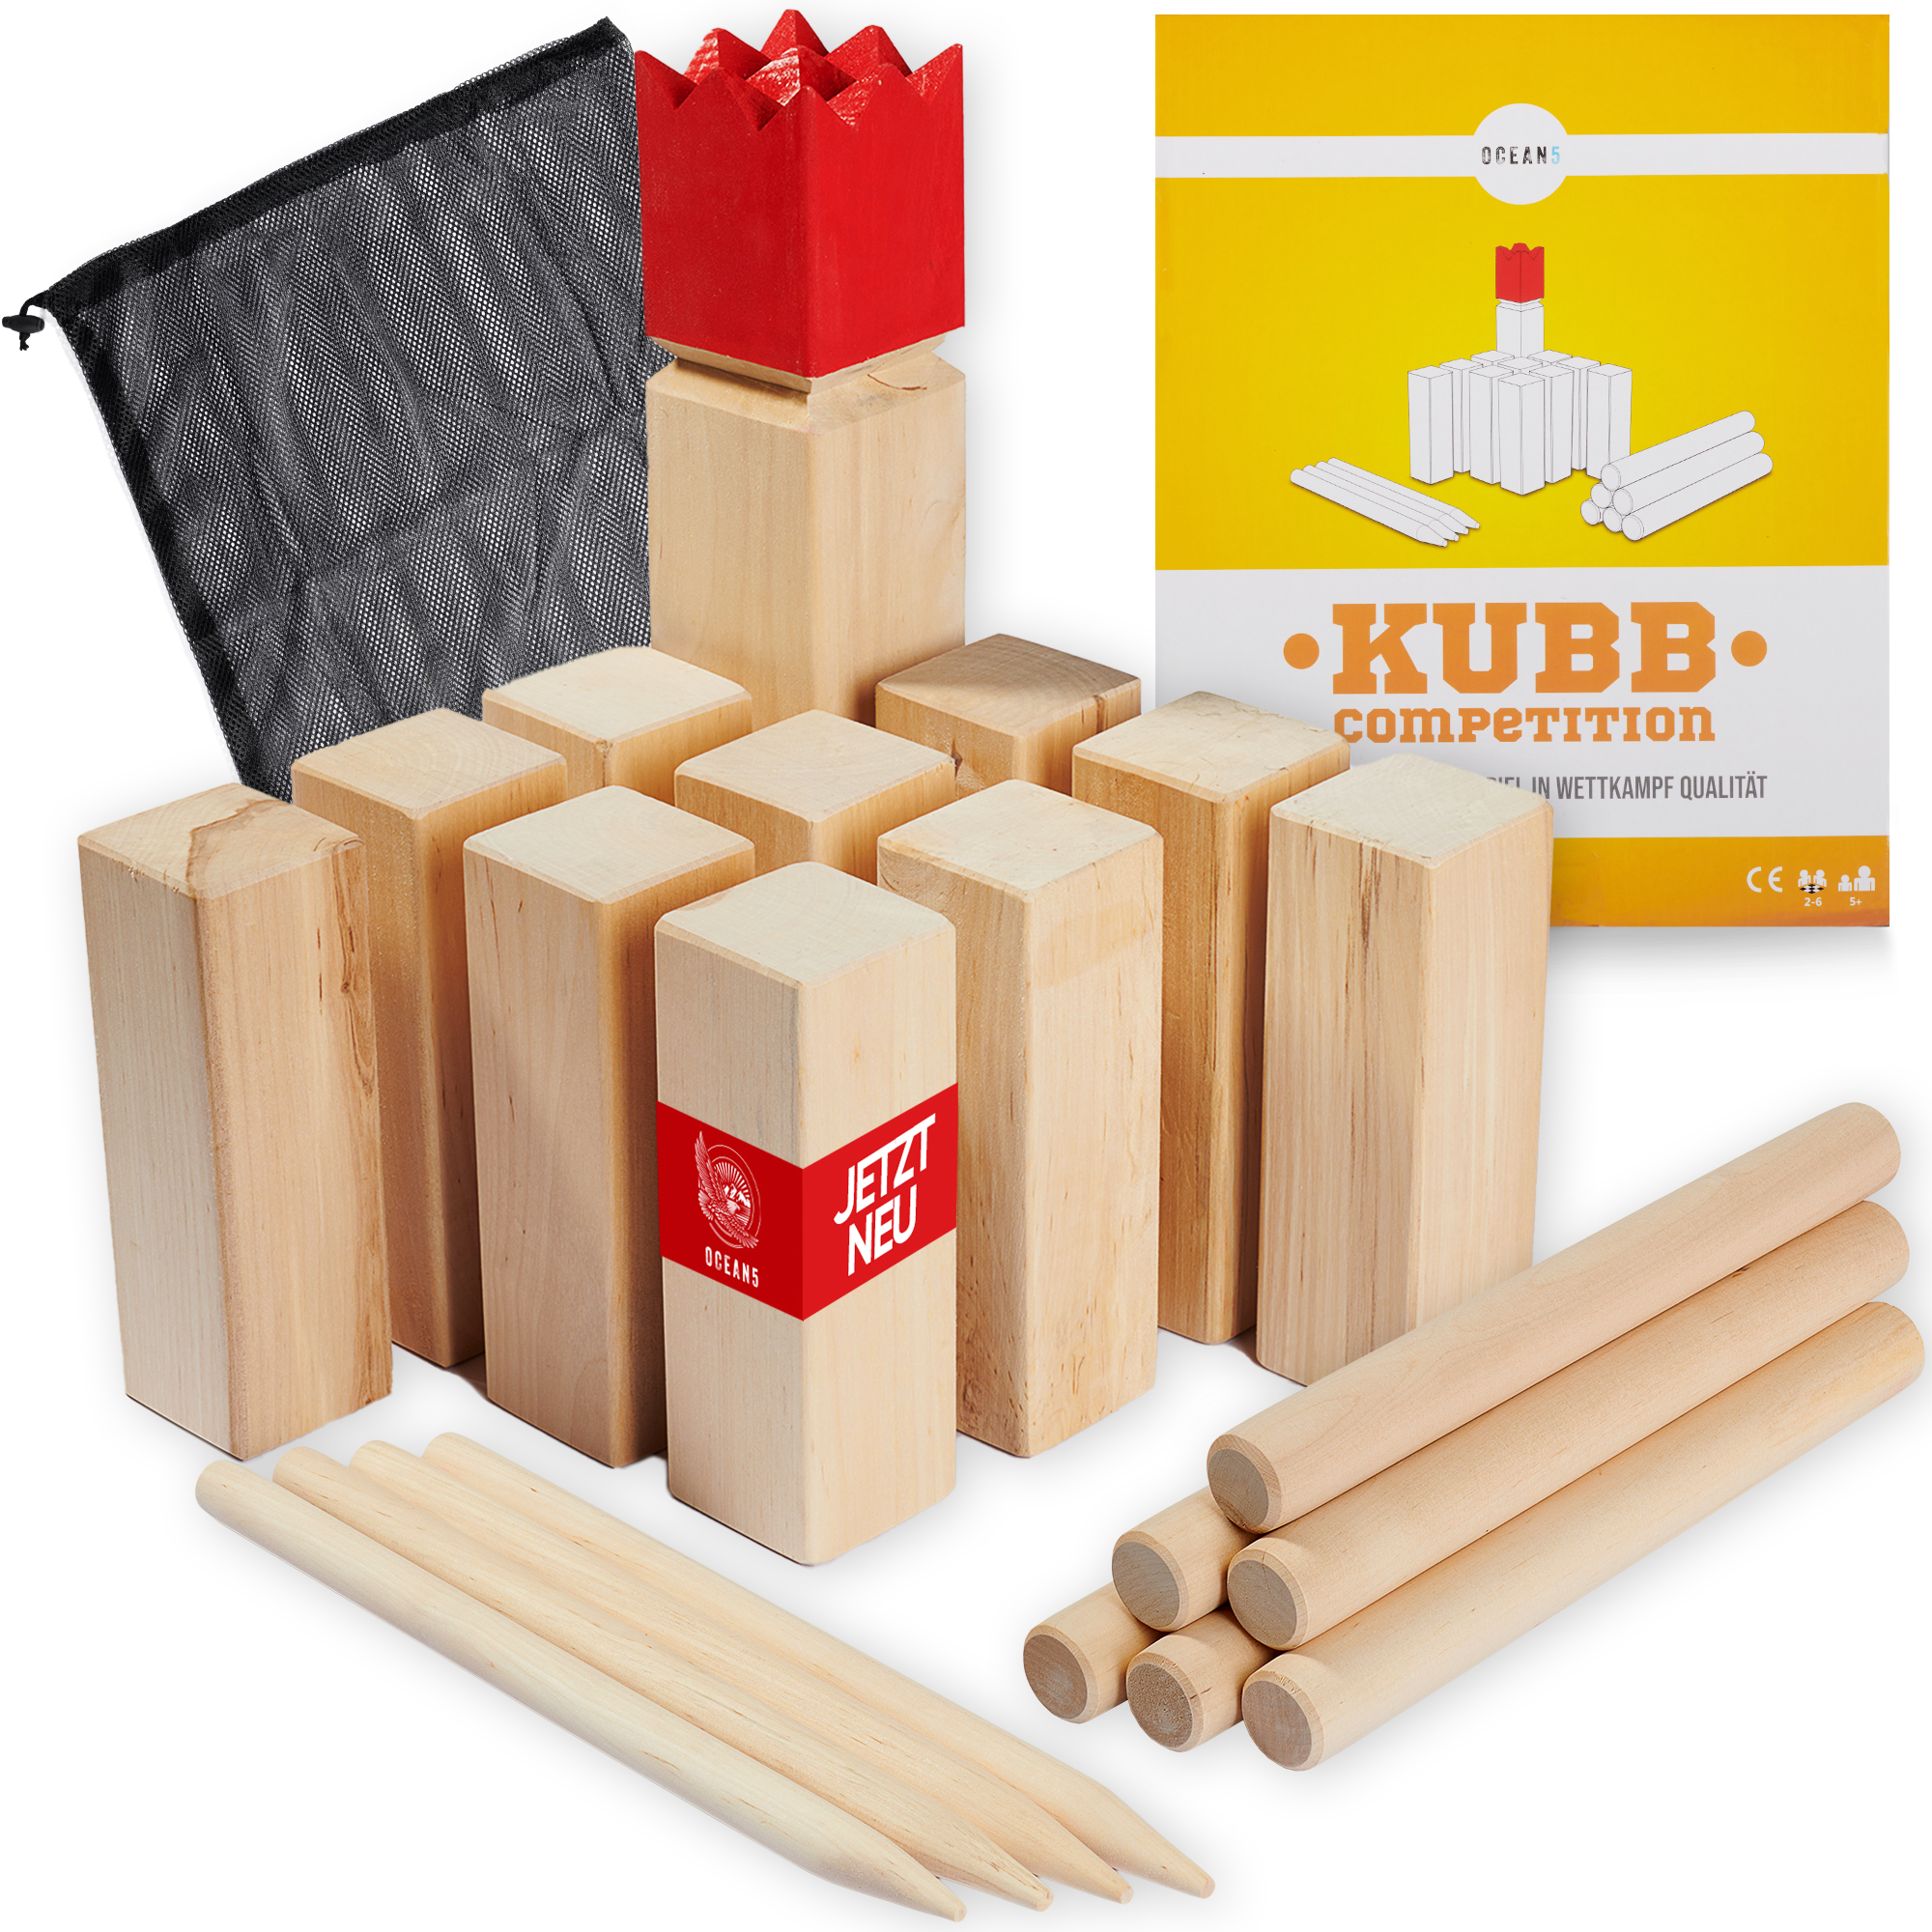 Kubb Birke - 6x6x30 cm Competition Wikinger Wurfspiel von Ocean5